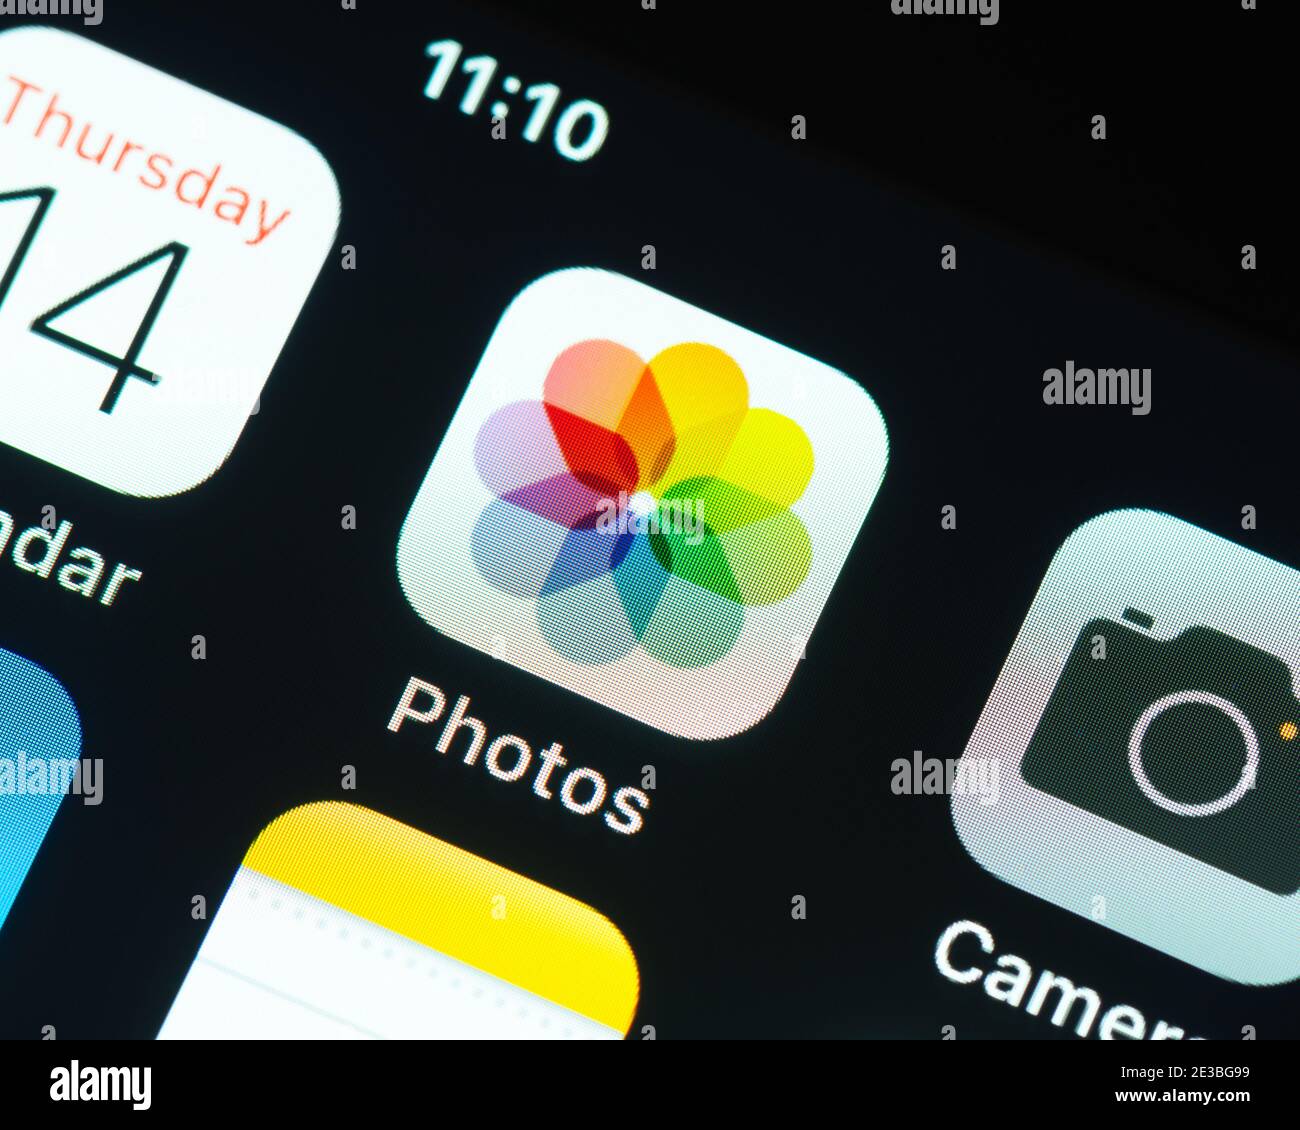 Icono de la aplicación Fotos de Apple en la pantalla del iPhone de Apple. Fotos es una aplicación de gestión y edición de fotografías. Foto de stock